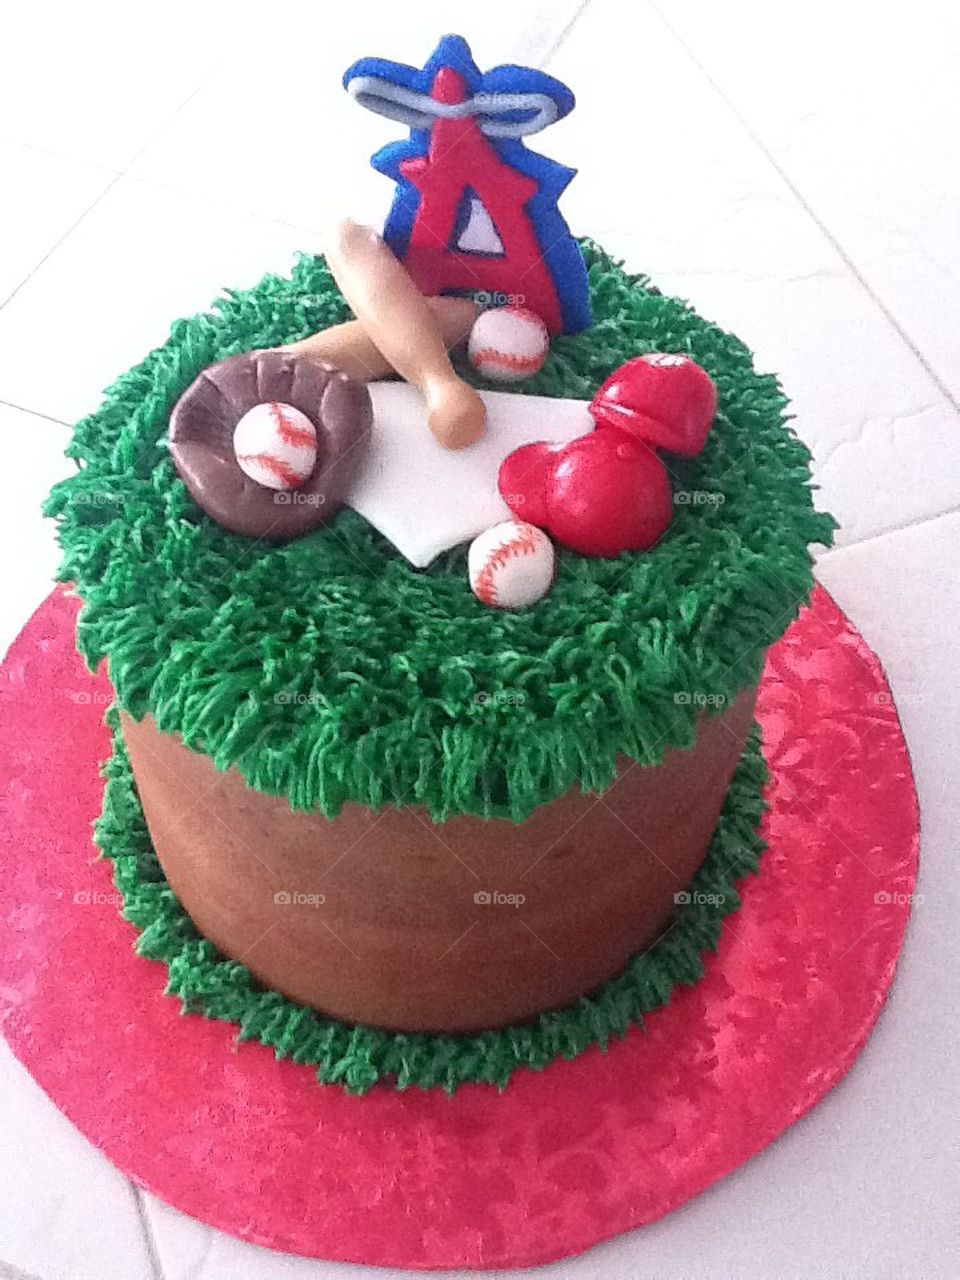 Angels baseball cake